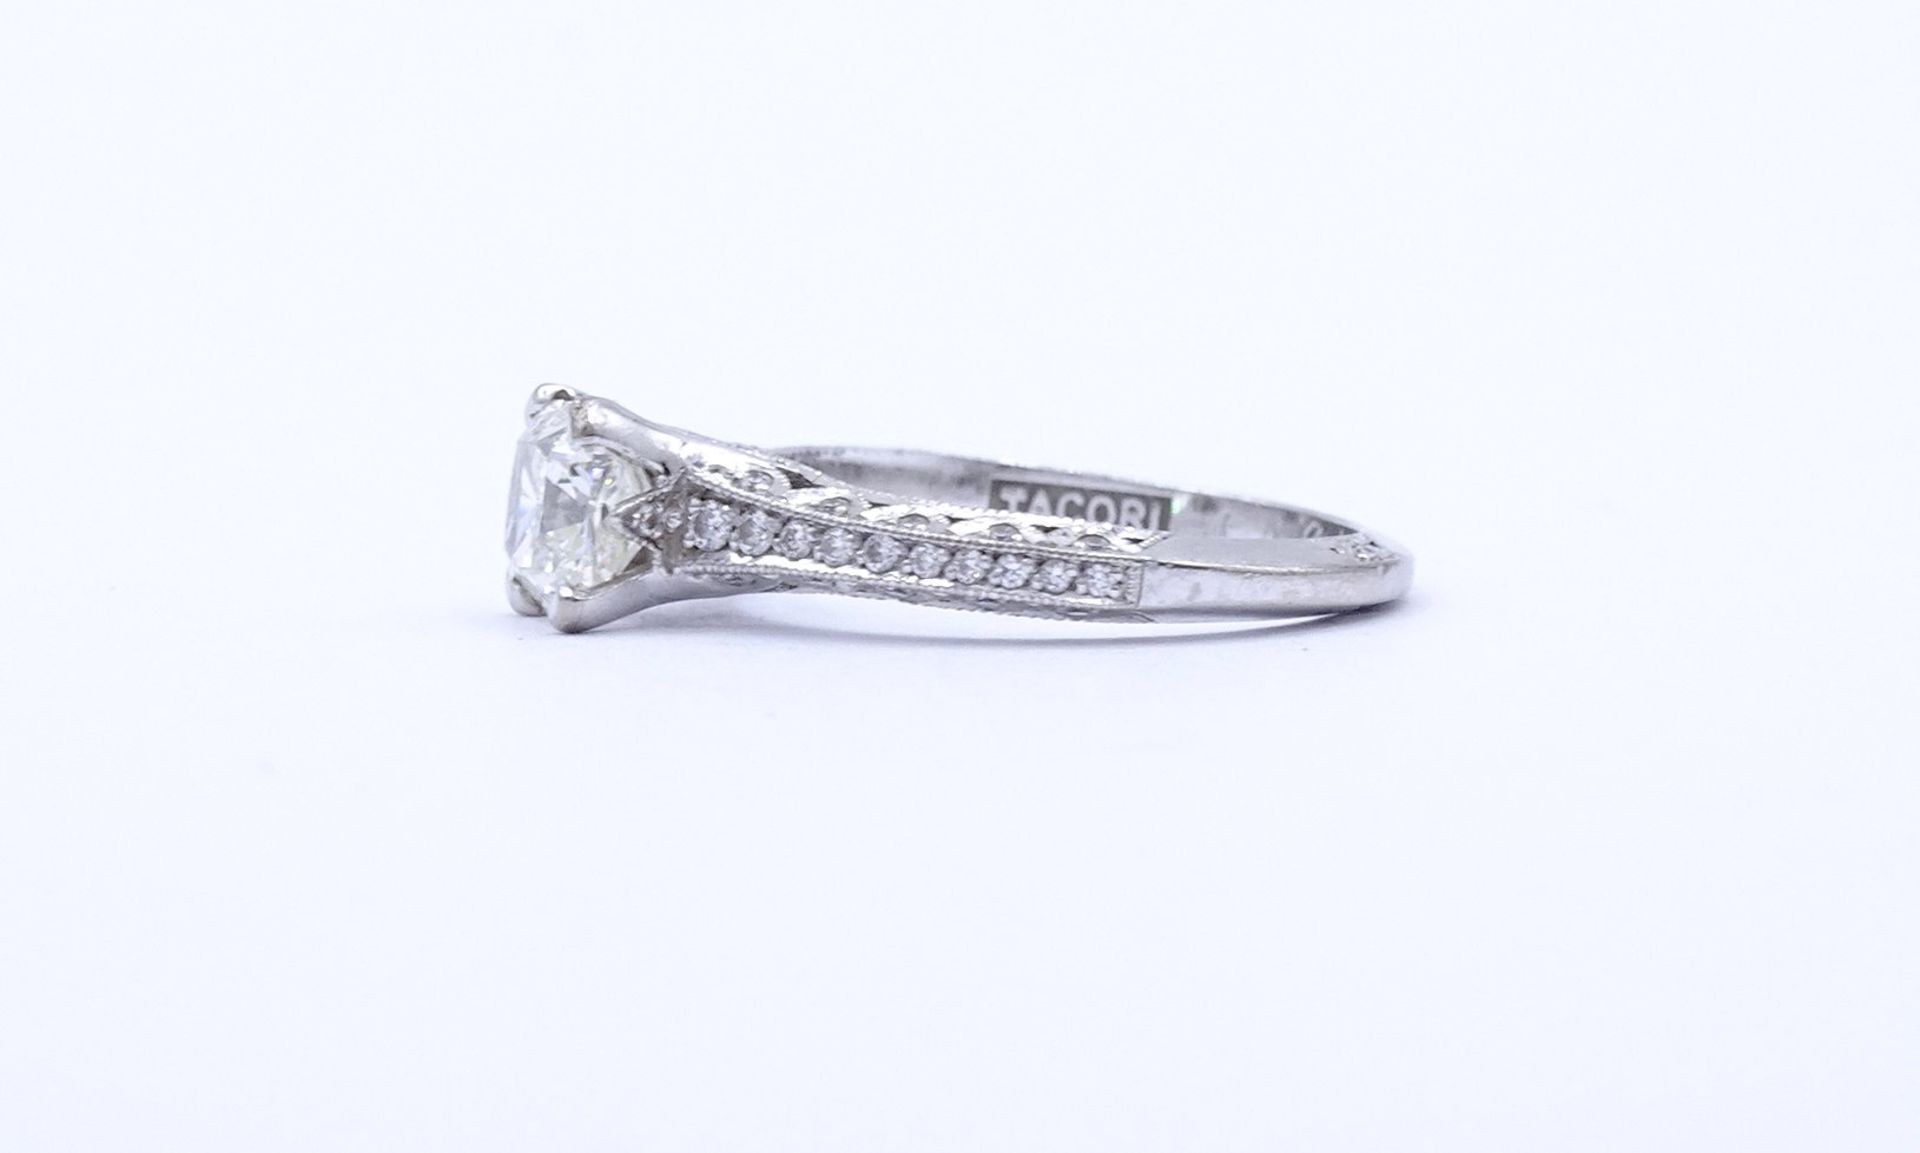 Princess Cut Ring - Verlobungsring , Princess 1,0ct., und 47 kl. Diamanten si, G-H, WG 18K "Tacori" - Image 5 of 20